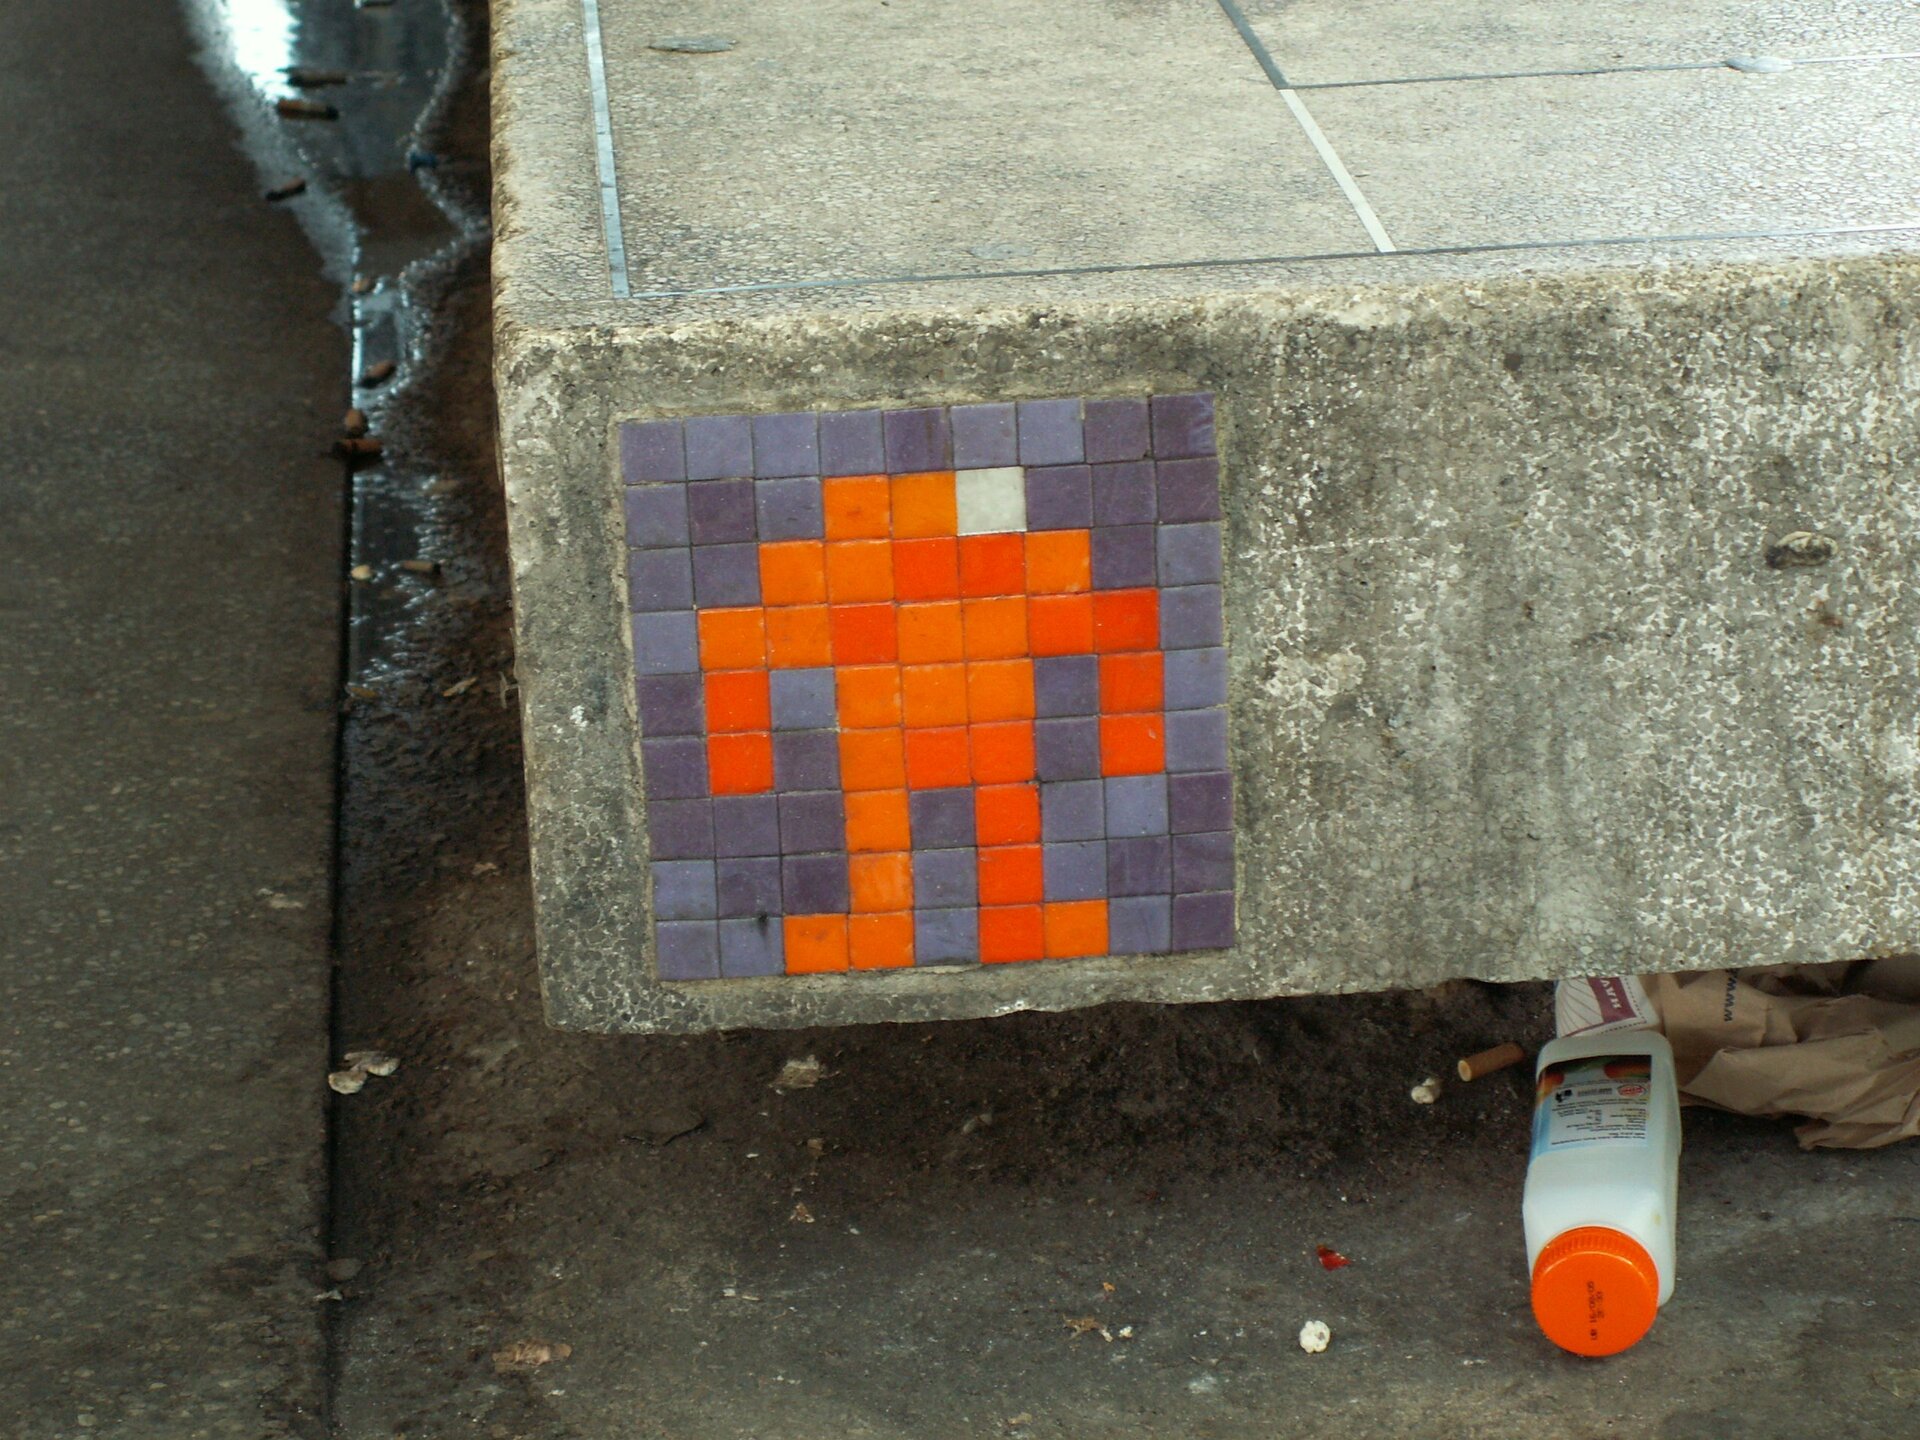 Ilustracja przedstawia wlepkę ukazującą symbol ludzika złożonego z pomarańczowych kwadracików na szarym tle. Umieszczona jest na betonowej płycie.